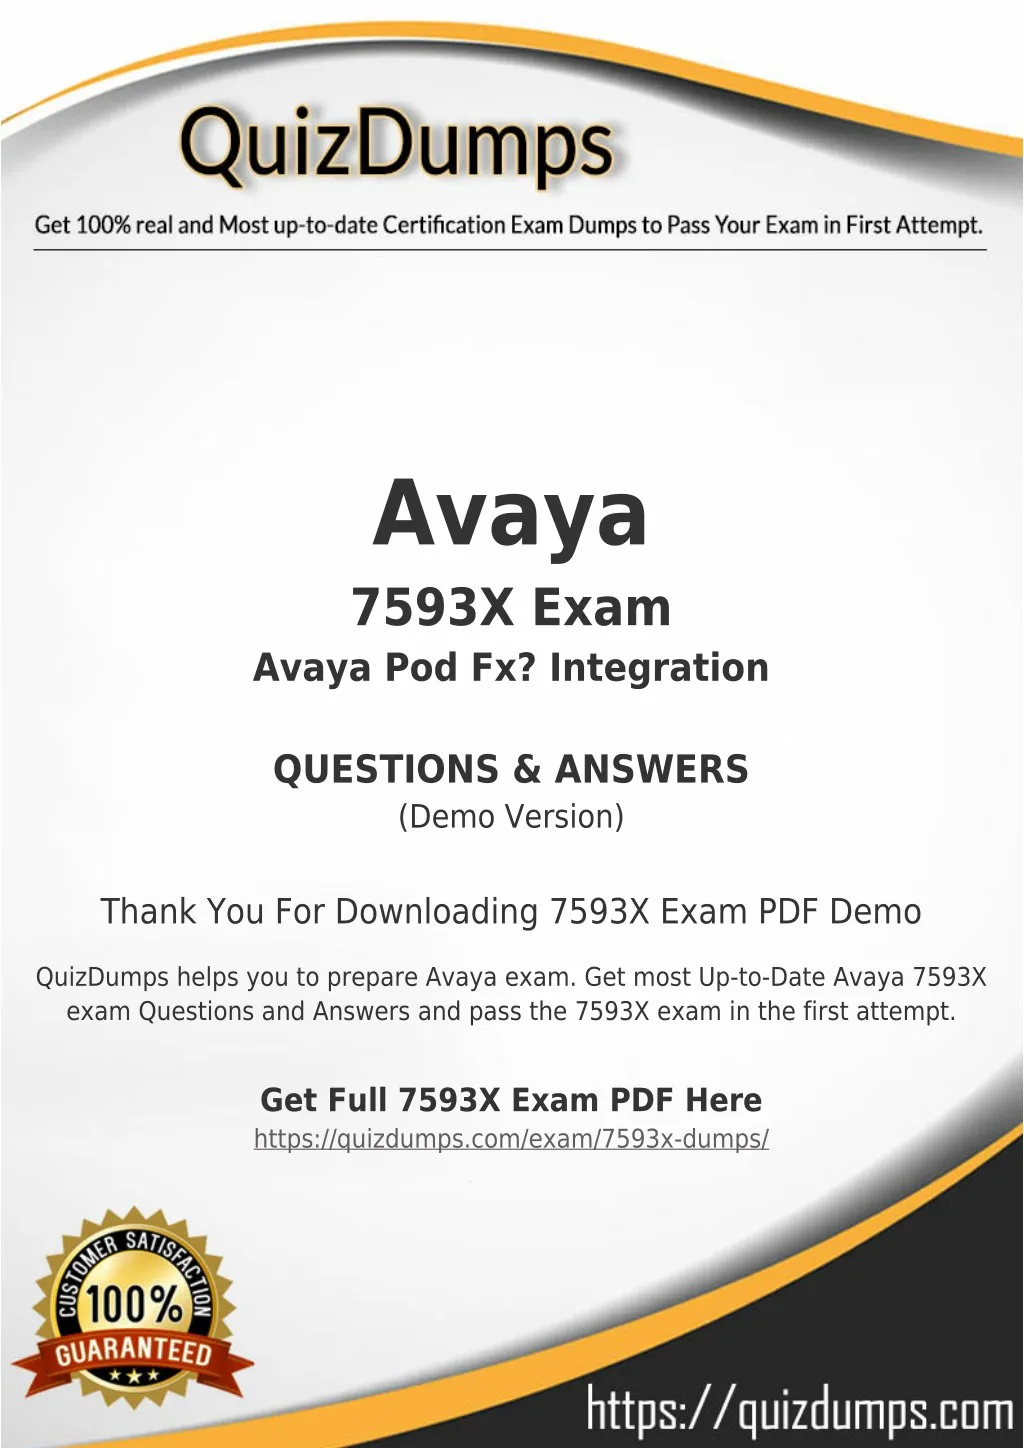 avaya 7593x exam avaya pod fx integration